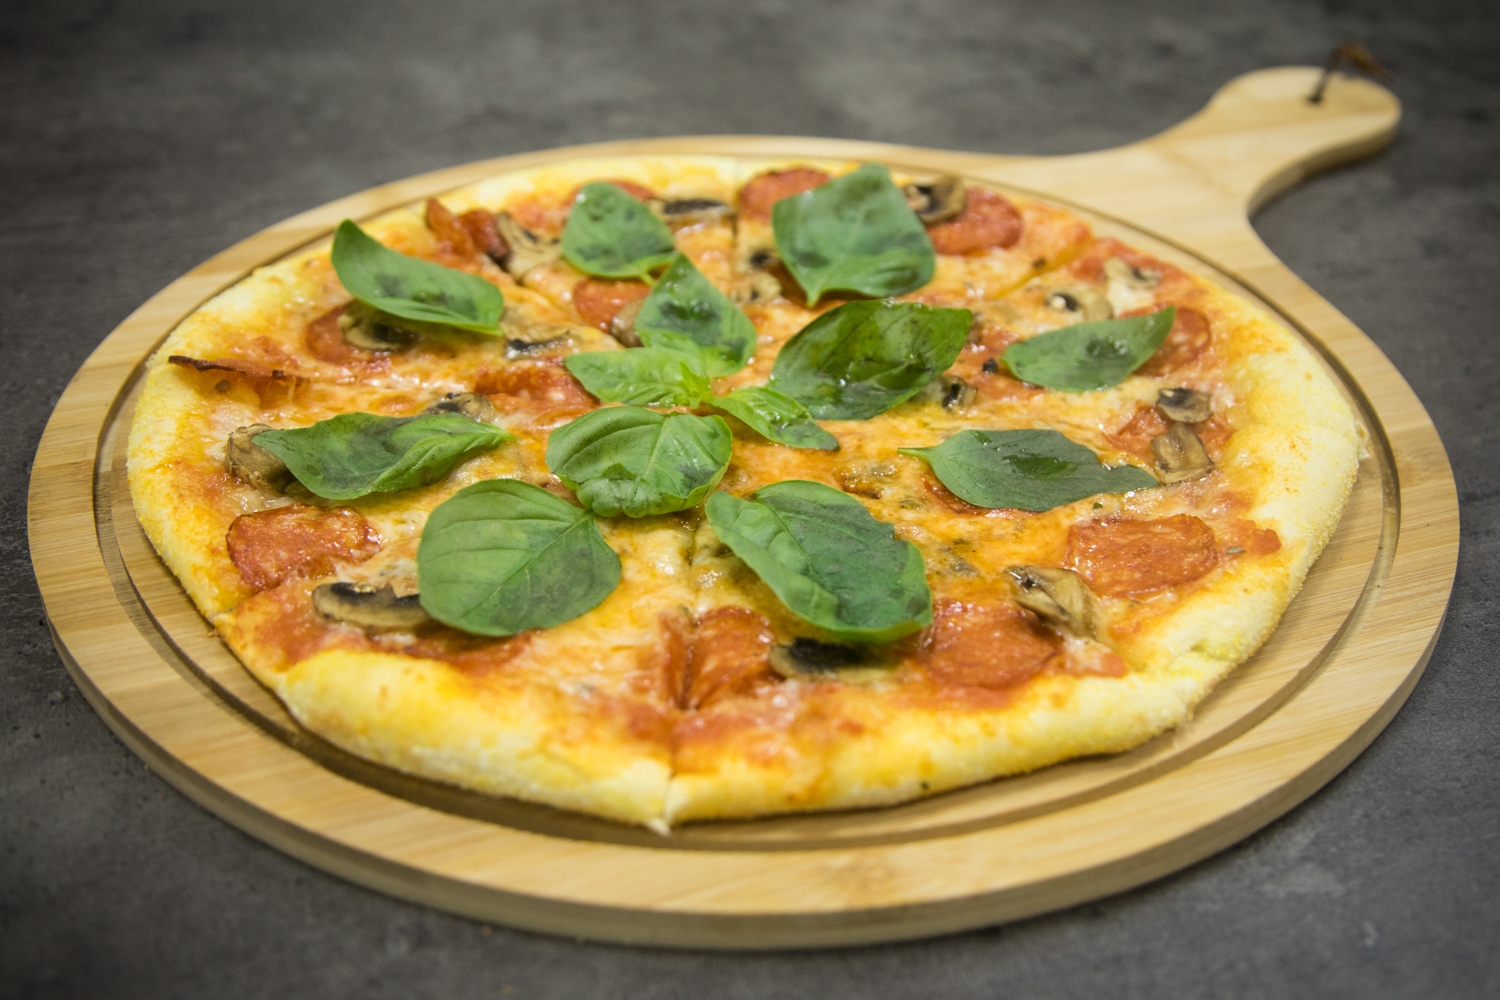 Երեւակայելու եւ սեփական պիցցան հավաքելու հնարավորություն տվող Pizza Ayo-ն